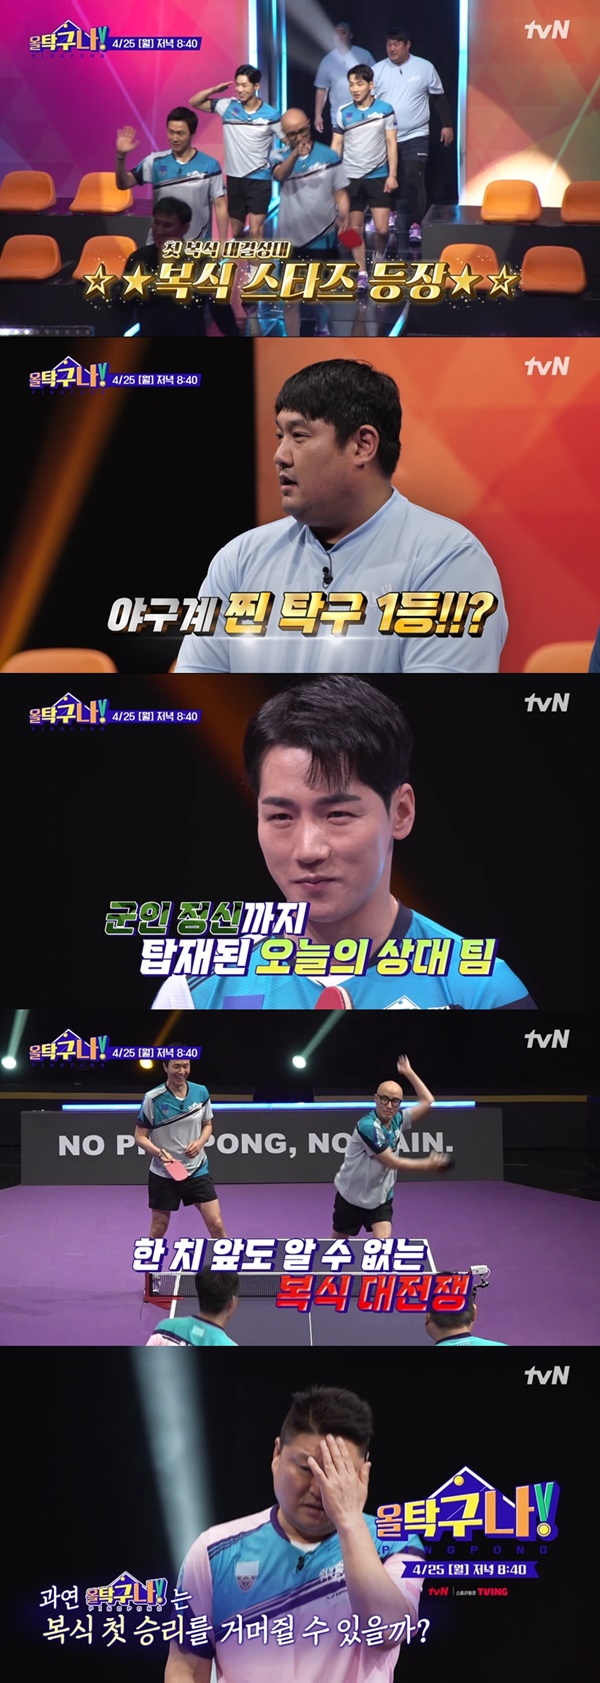 '올탁구나' 최강 연예인 팀과 복식 매치 '별들의 전쟁'(사진=tvN)